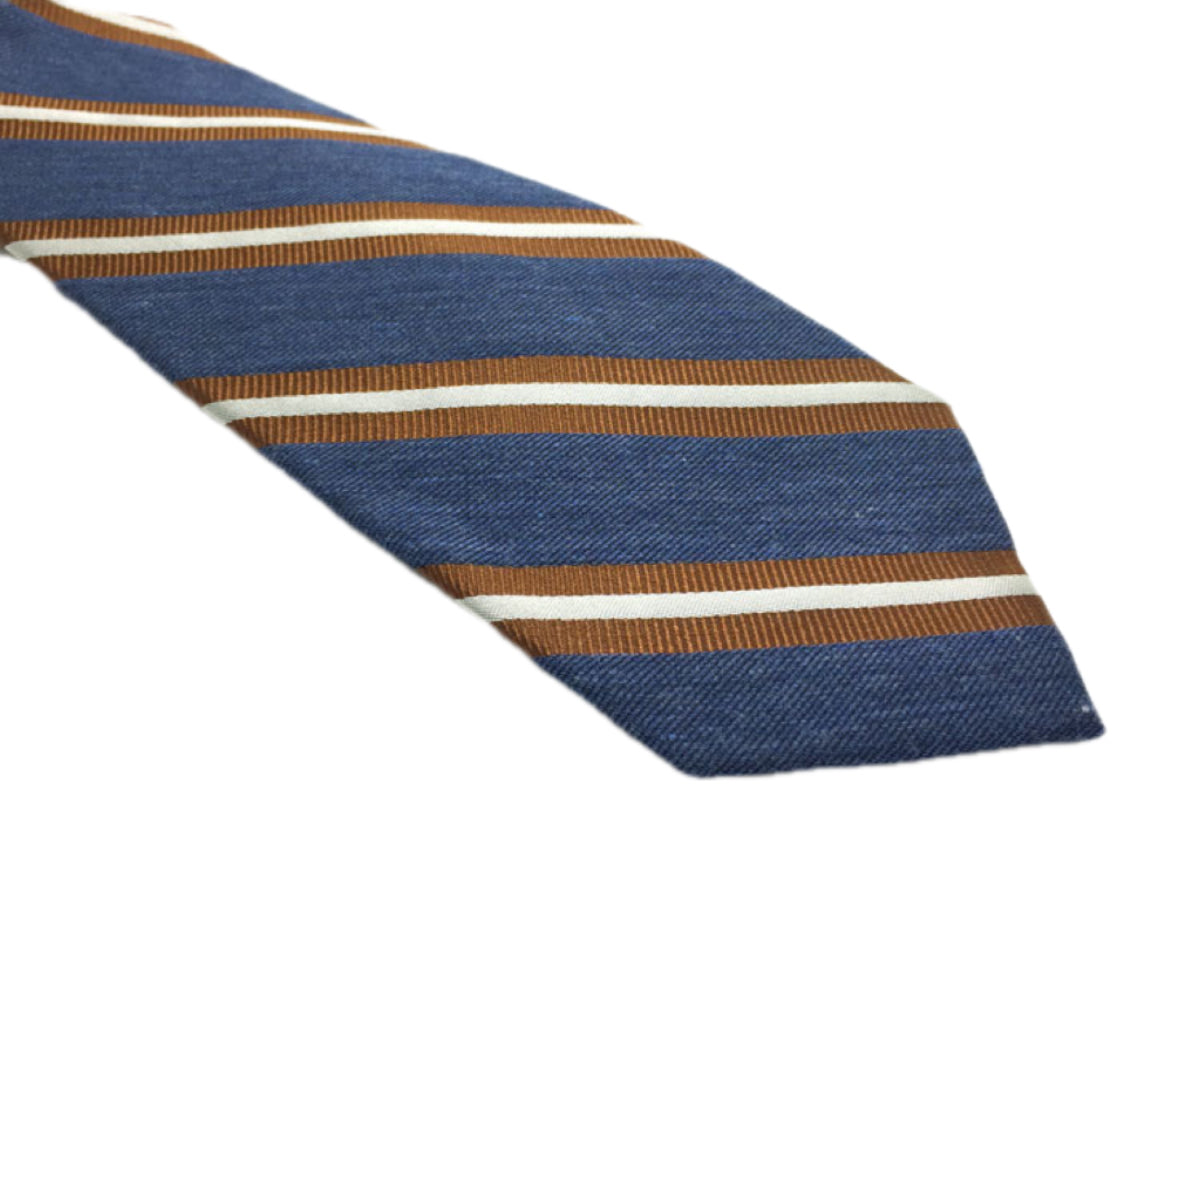 Cravatta in seta e lana a righe blu